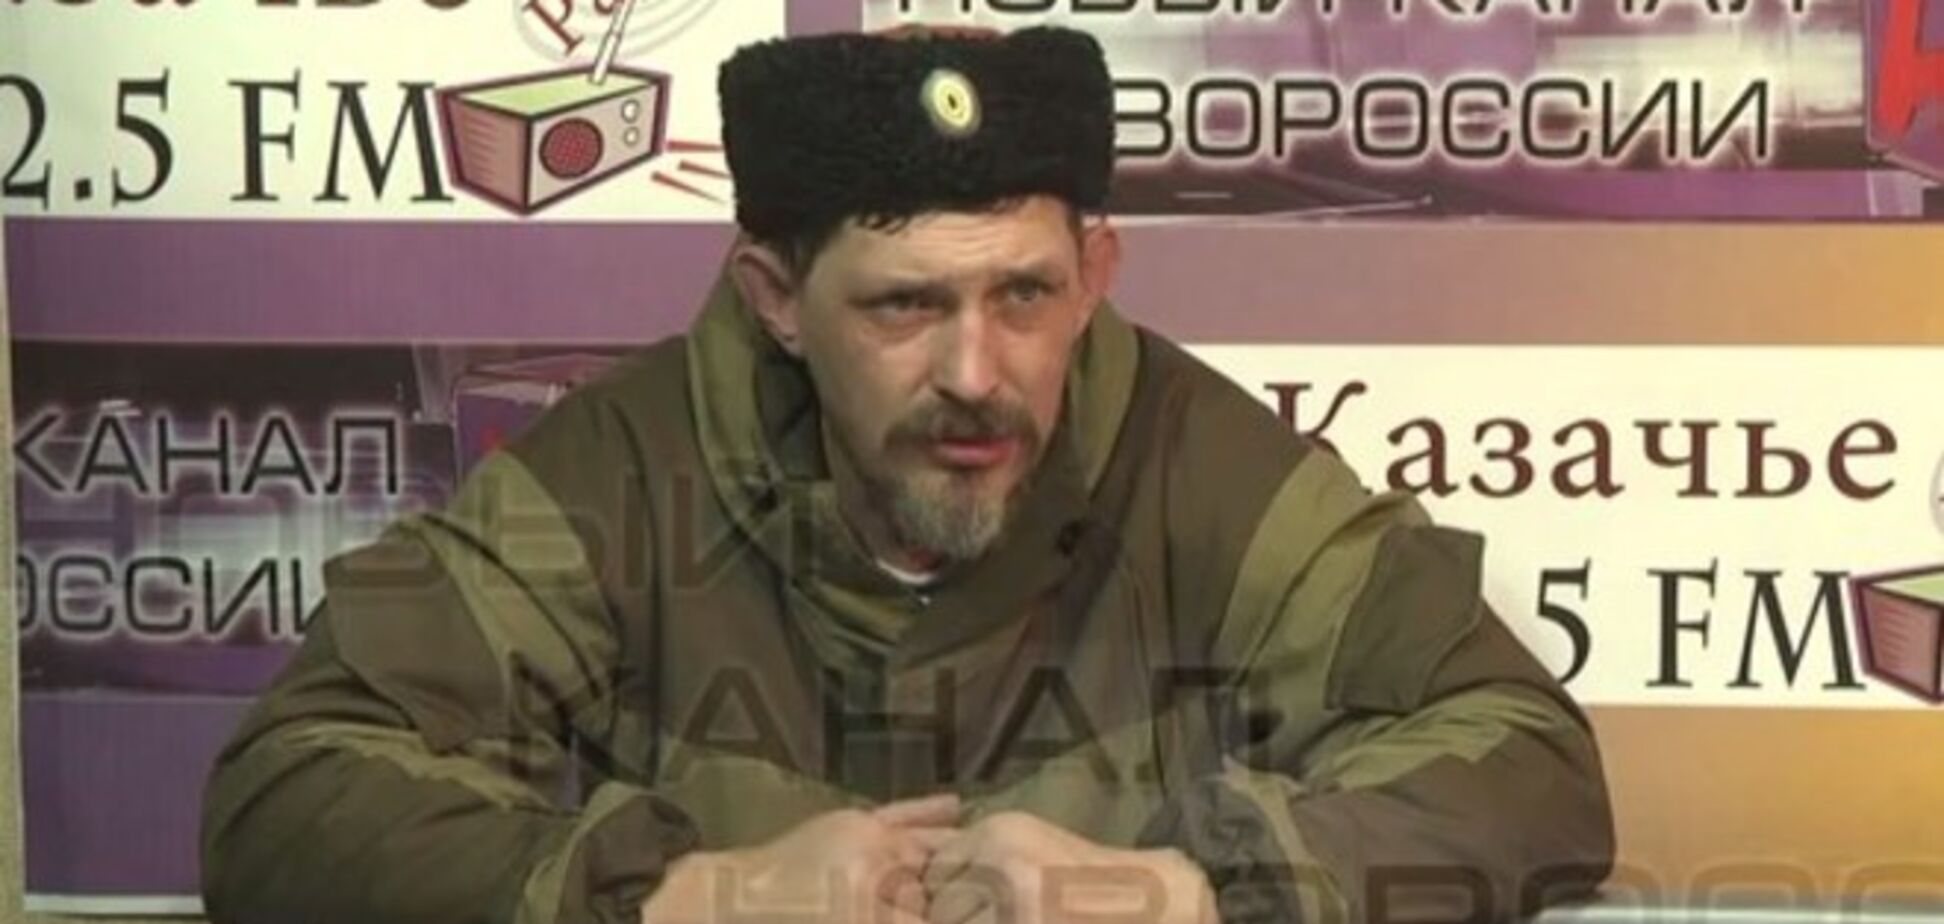 Главарь казачьей банды Стаханова в шоке от количества пенсионеров: 'ЛНР' не спешит выдавать 59 млн грн